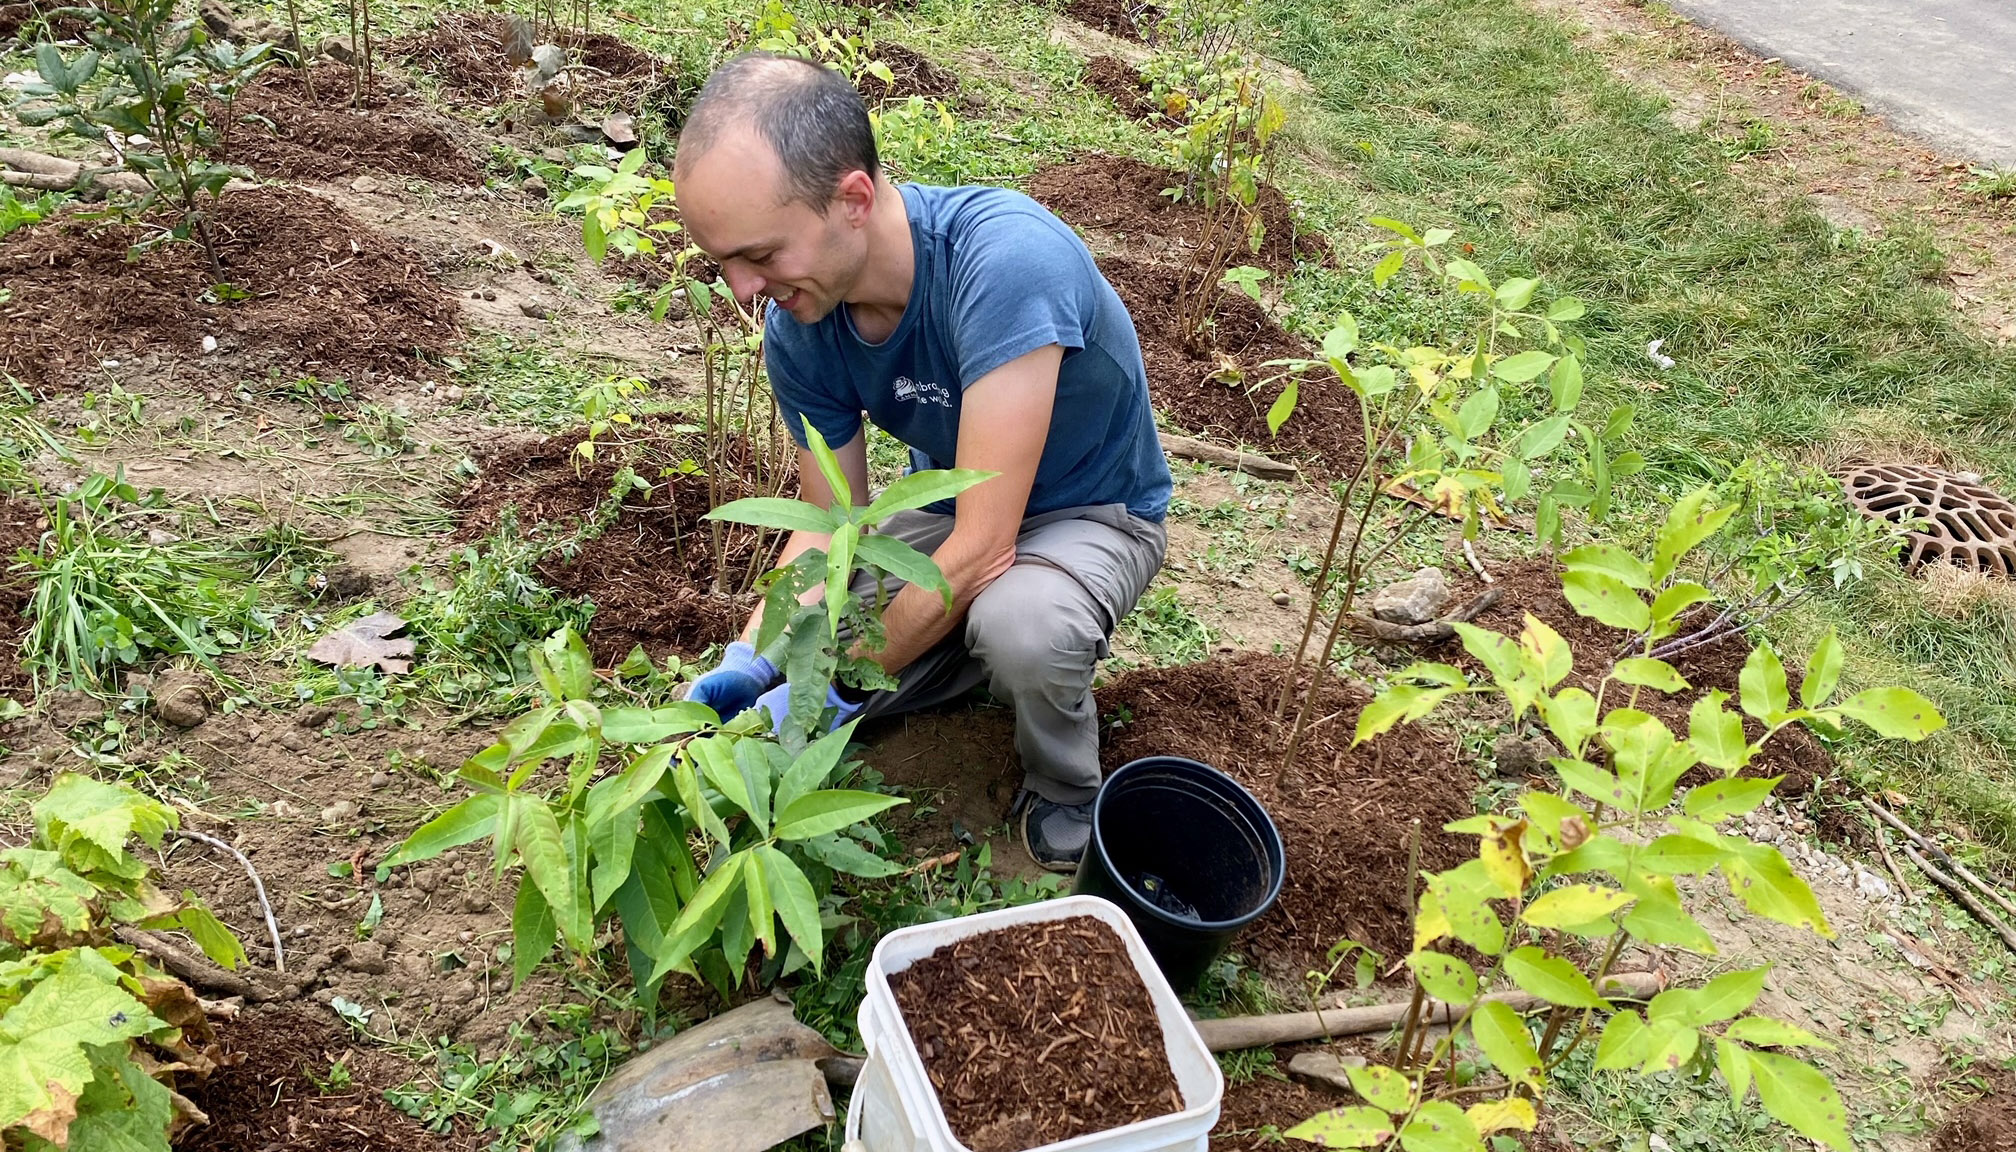 Volunteer planting trees